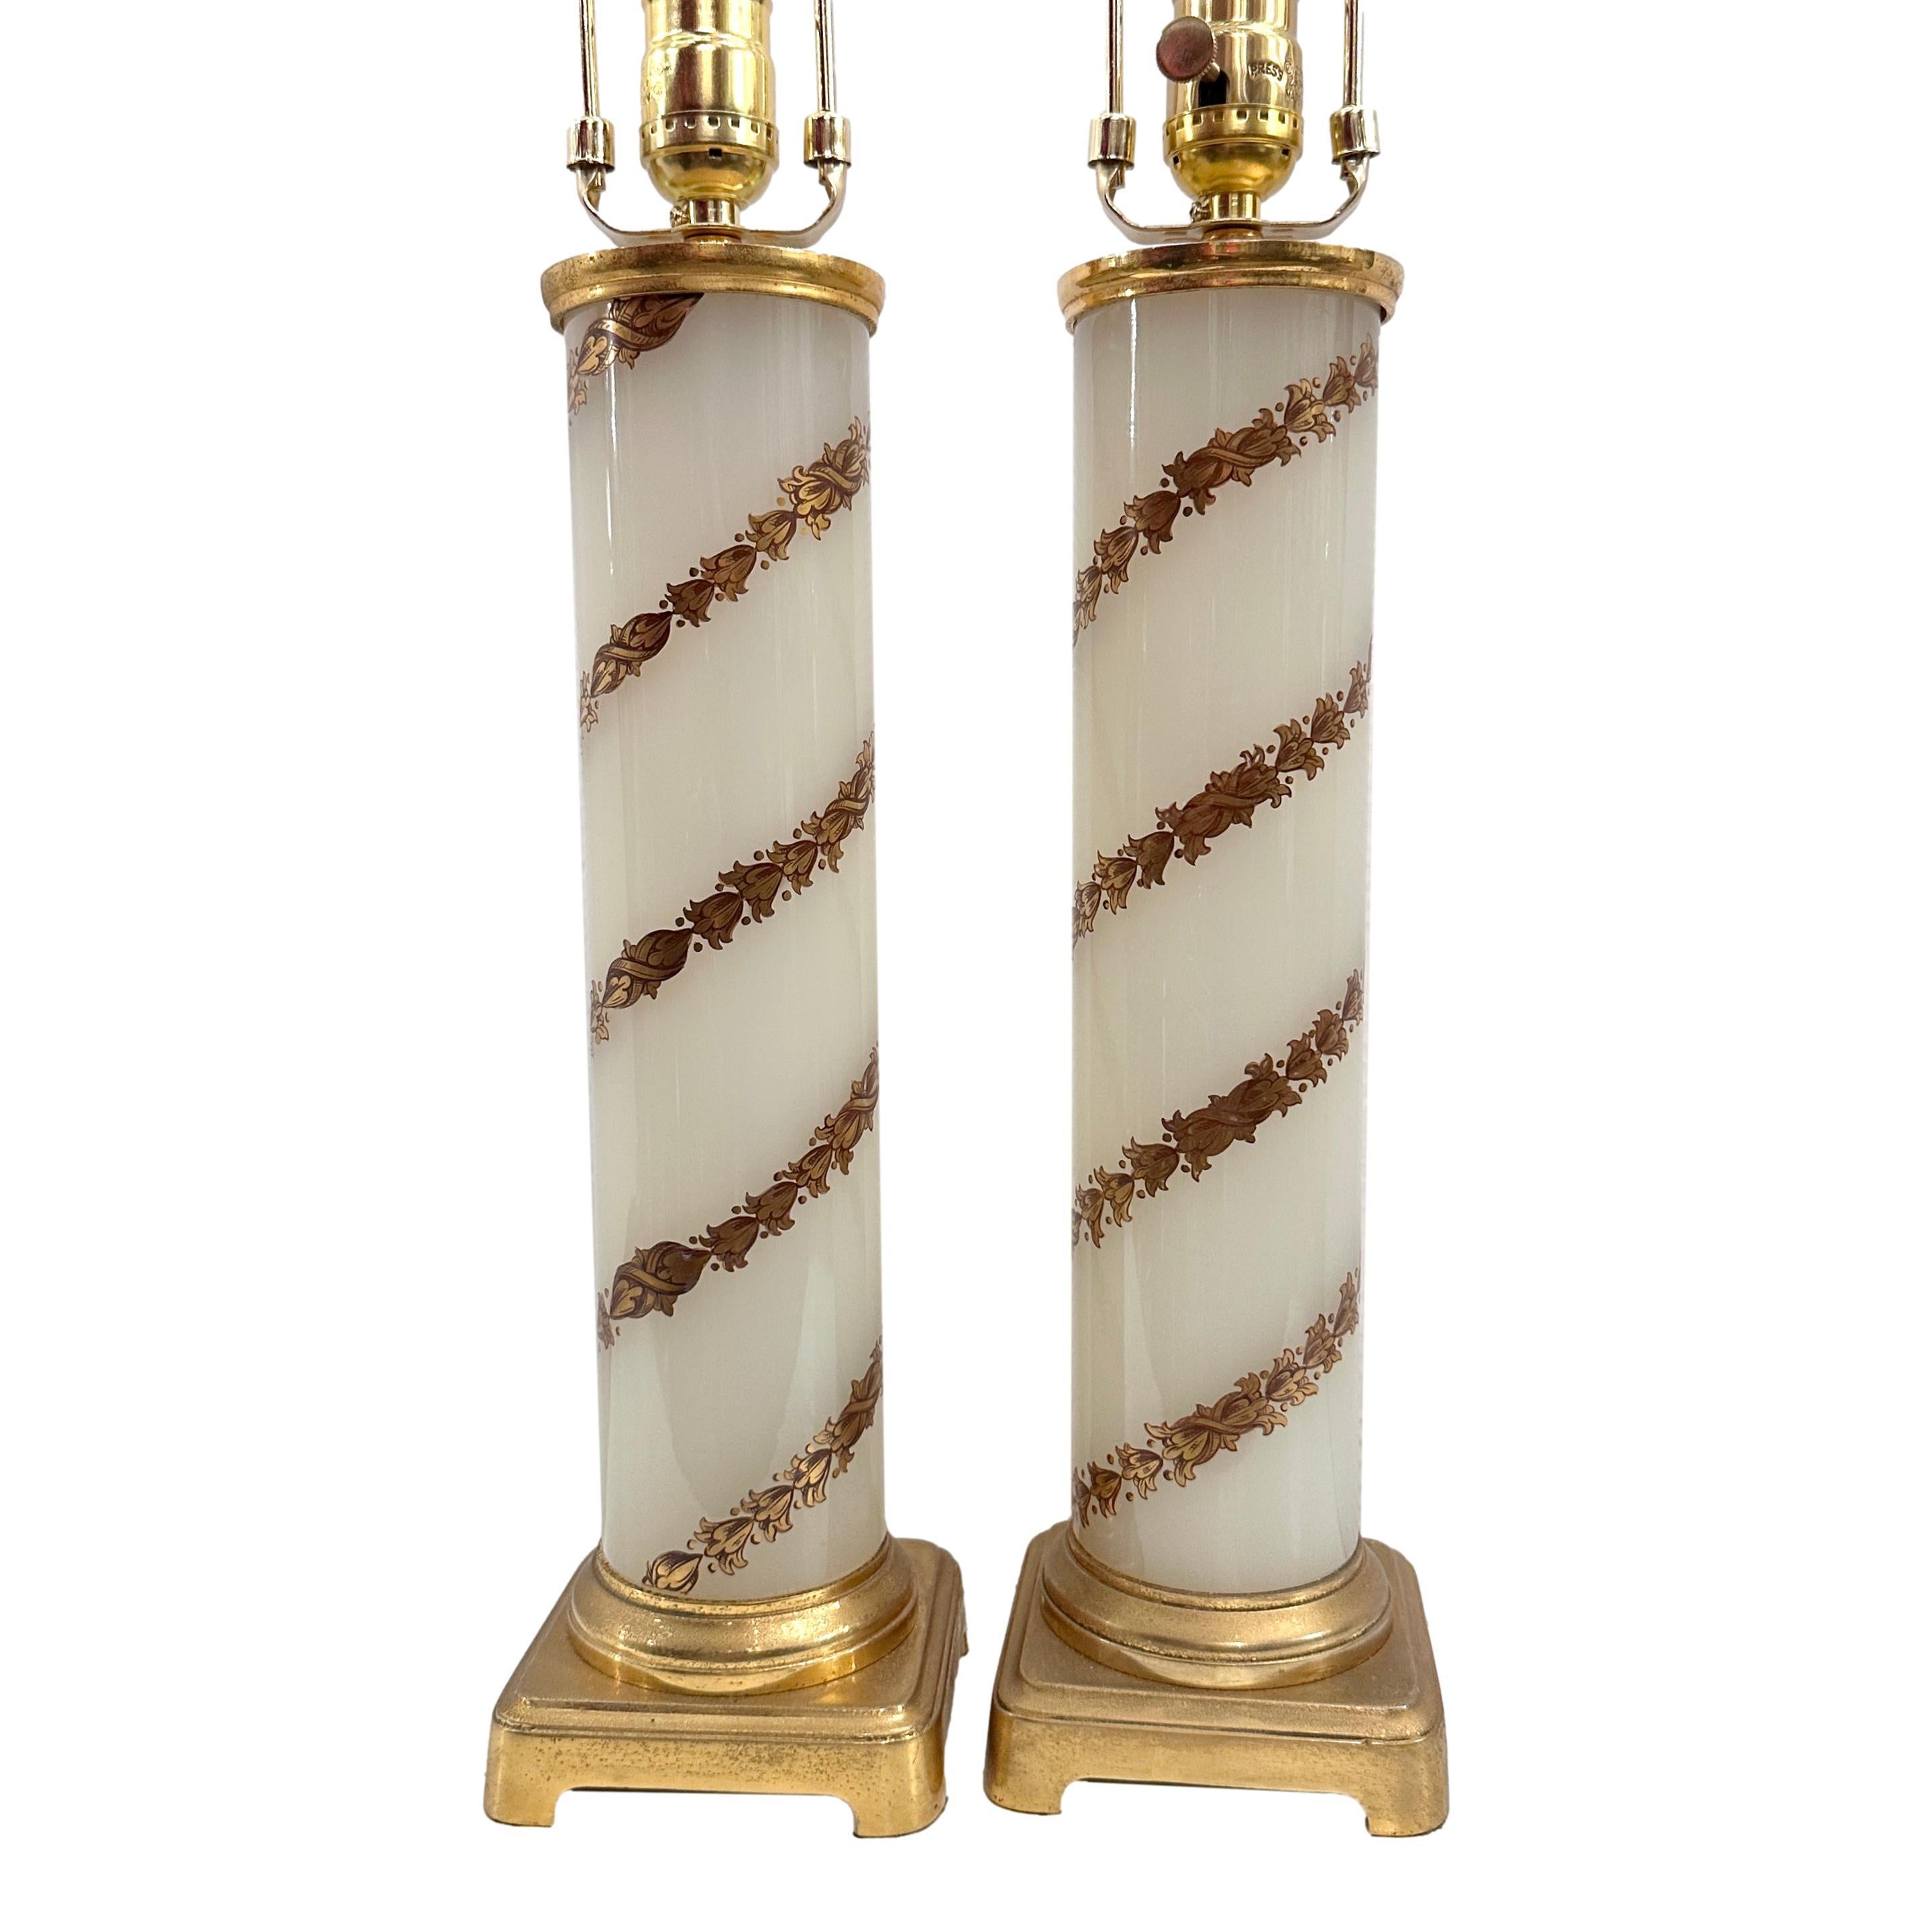 Paire de lampes françaises en opaline blanche des années 1950 avec décor de feuillage doré.

Mesures :
Hauteur du corps : 16